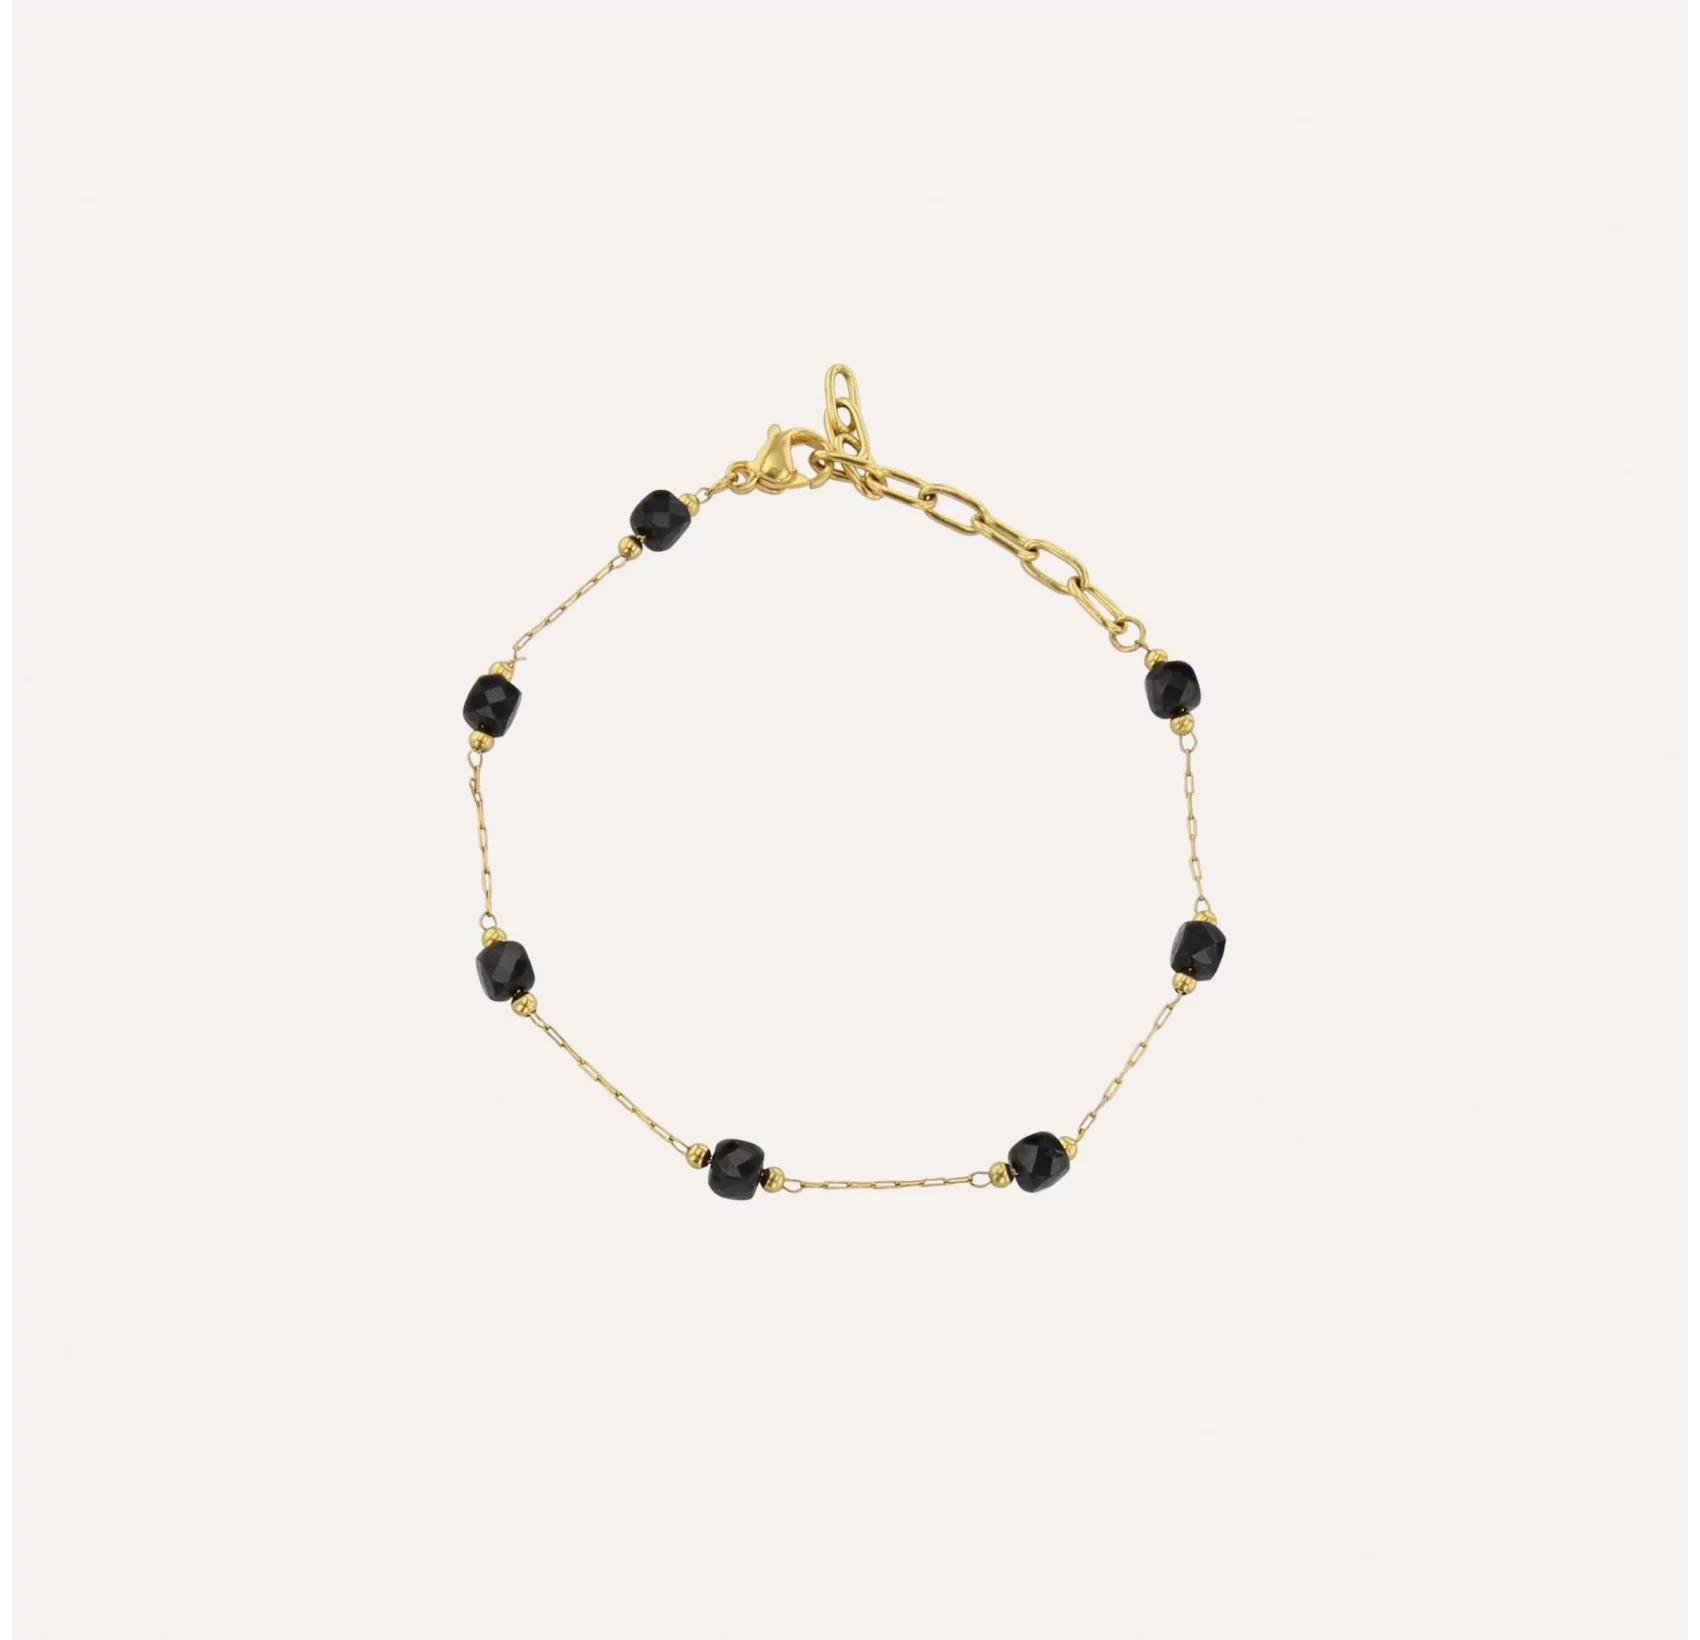 HEKA bracelet in black spinel |Gloria Balensi